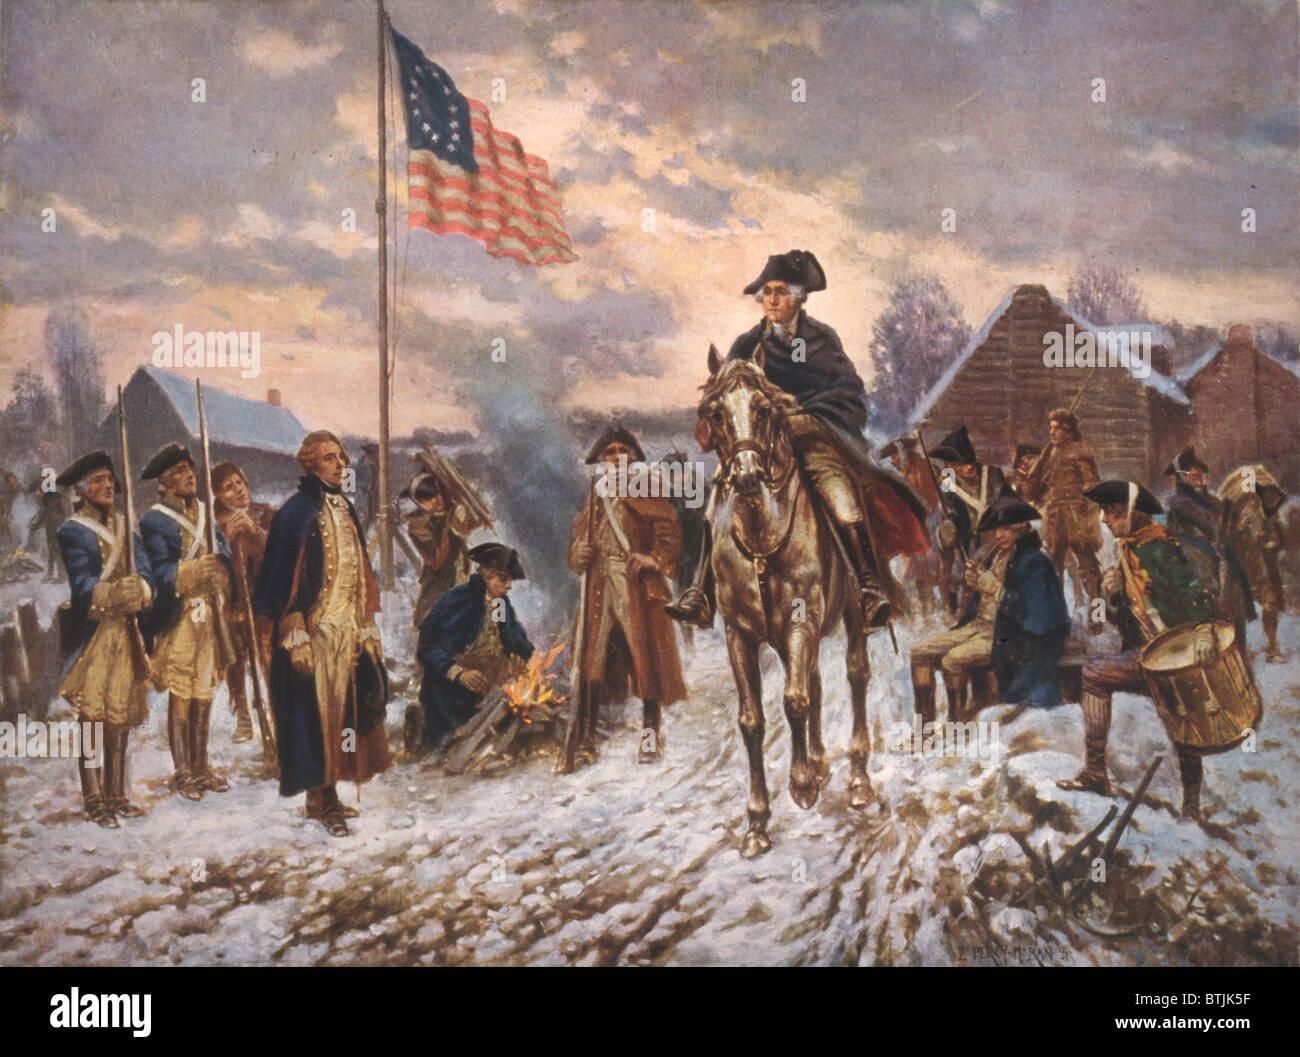 Die amerikanische Revolution, George Washington in Valley Forge, Präsident George Washington auf dem Rücken der Pferde im Schnee in Valley Forge, von Percy Moran, ca. 1911. Stockfoto